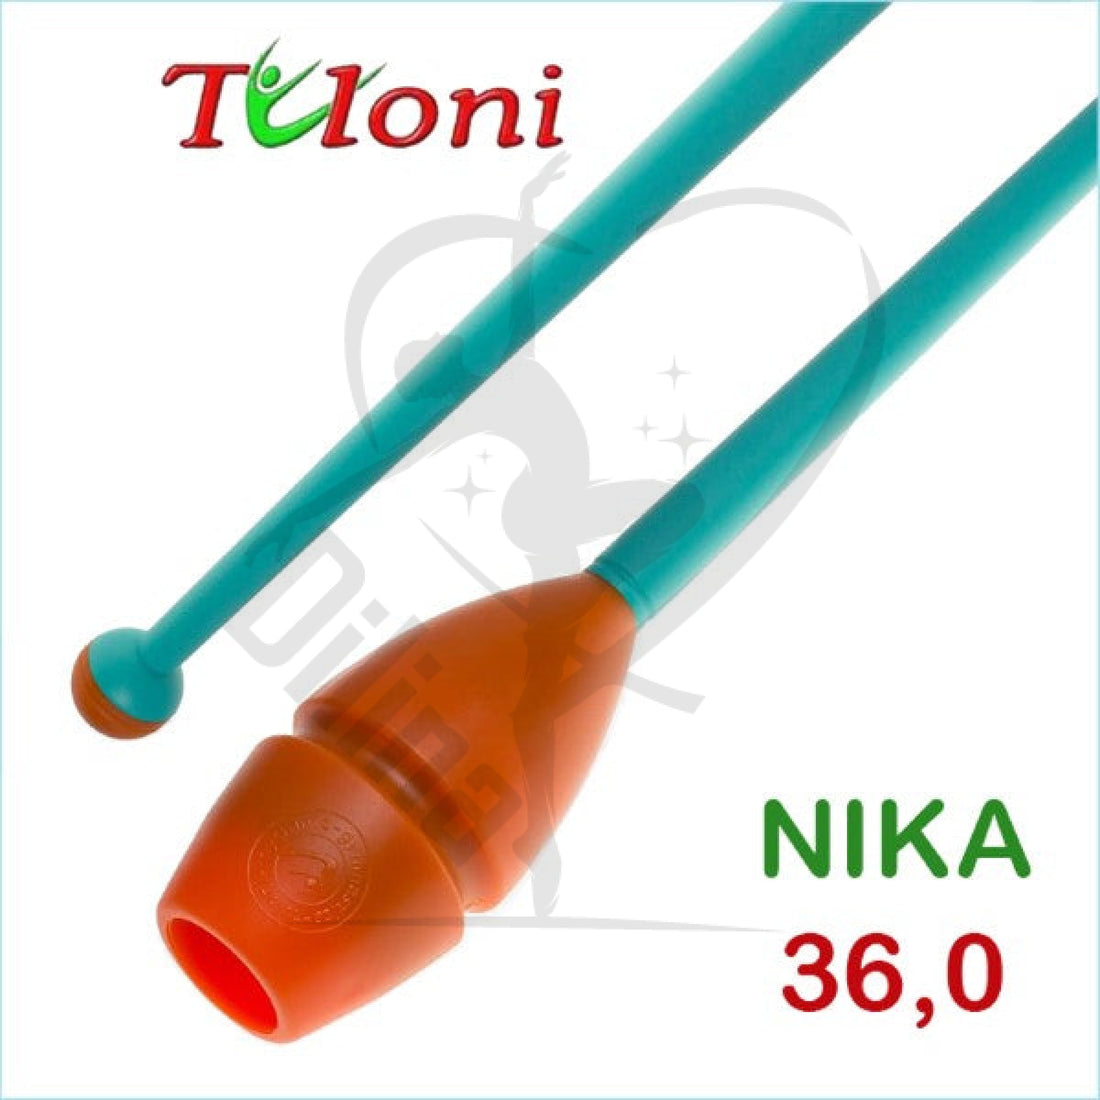 Tuloni Bi-Colour Connectable Clubs Mos. Nika 36Cm Orange X Turquoise